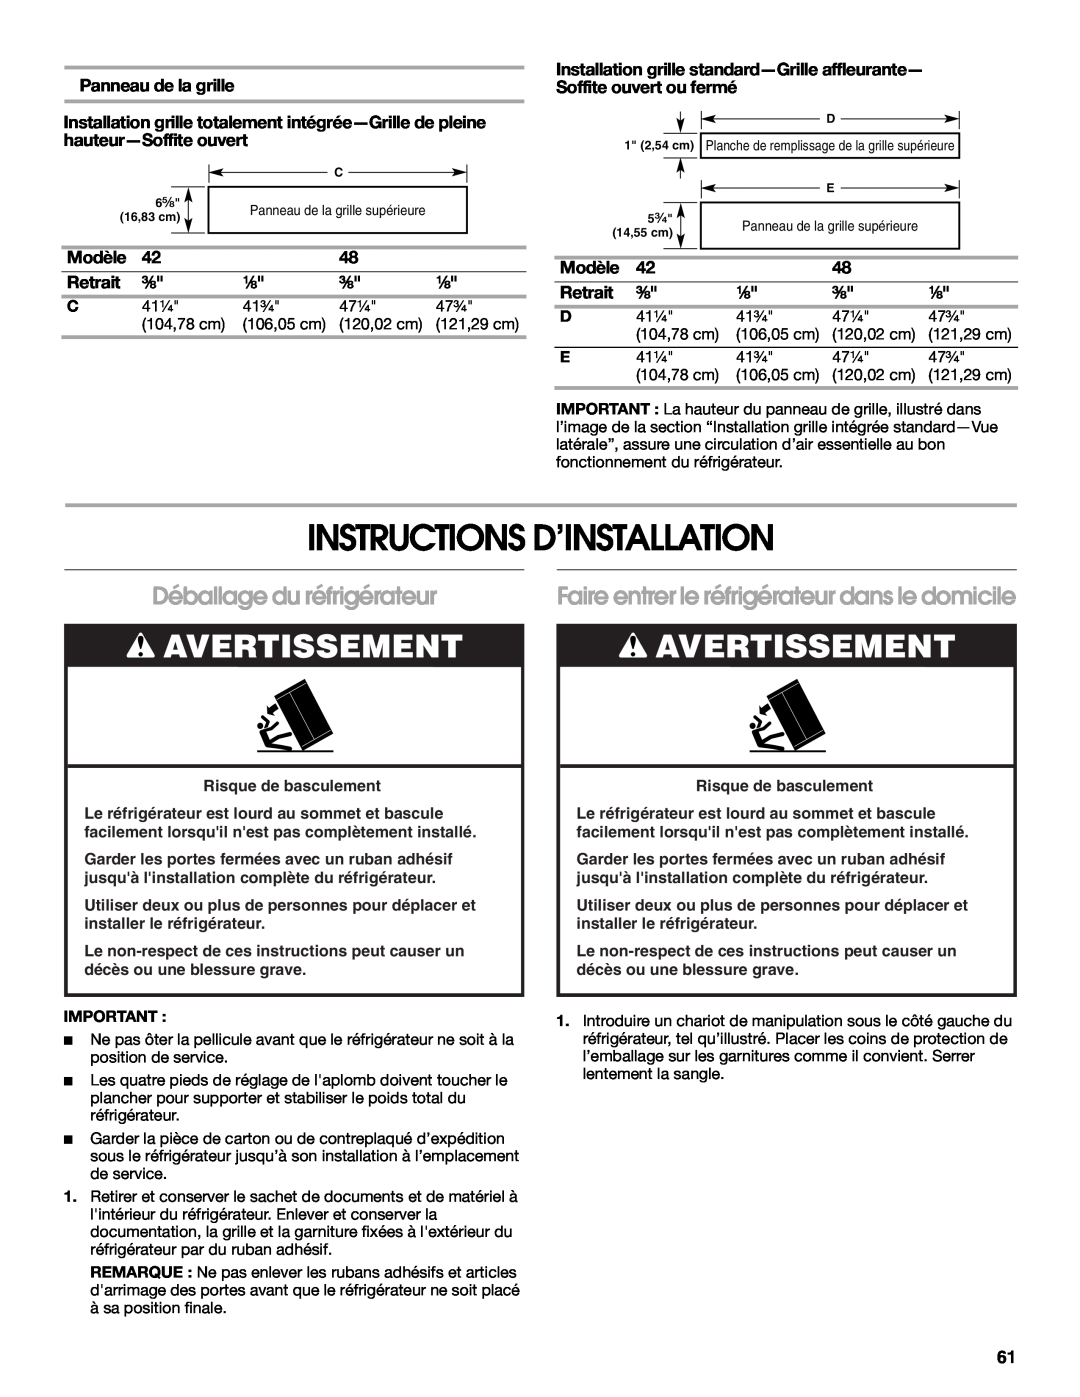 Jenn-Air W10379136B Instructions D’Installation, Déballage du réfrigérateur, Panneau de la grille, Retrait, Avertissement 